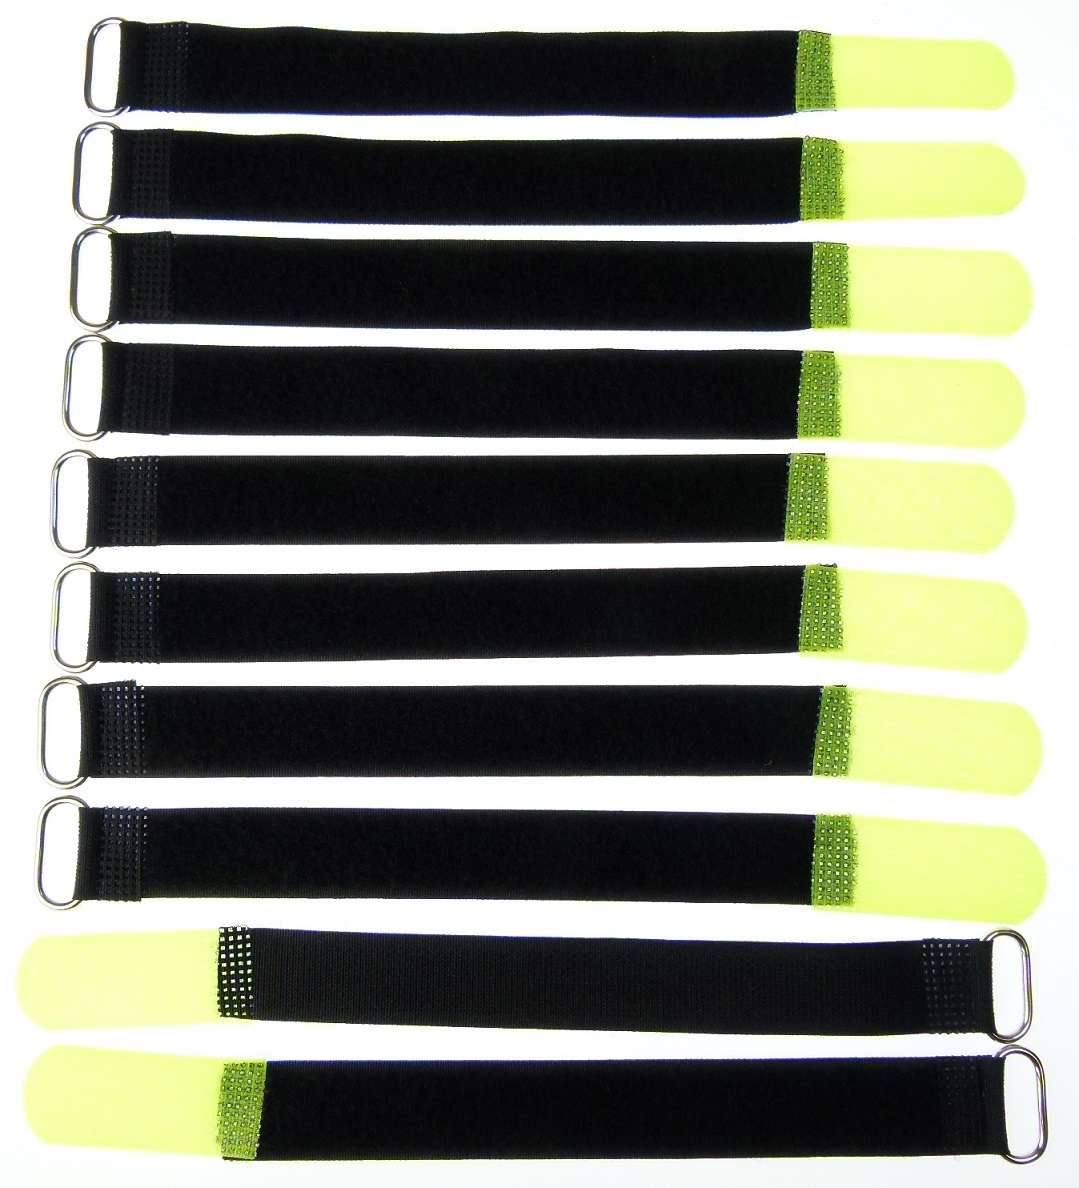 10x Kabelklettband 20cm x 20mm schwarz Klettband Klett Kabel Binder Band mit Öse